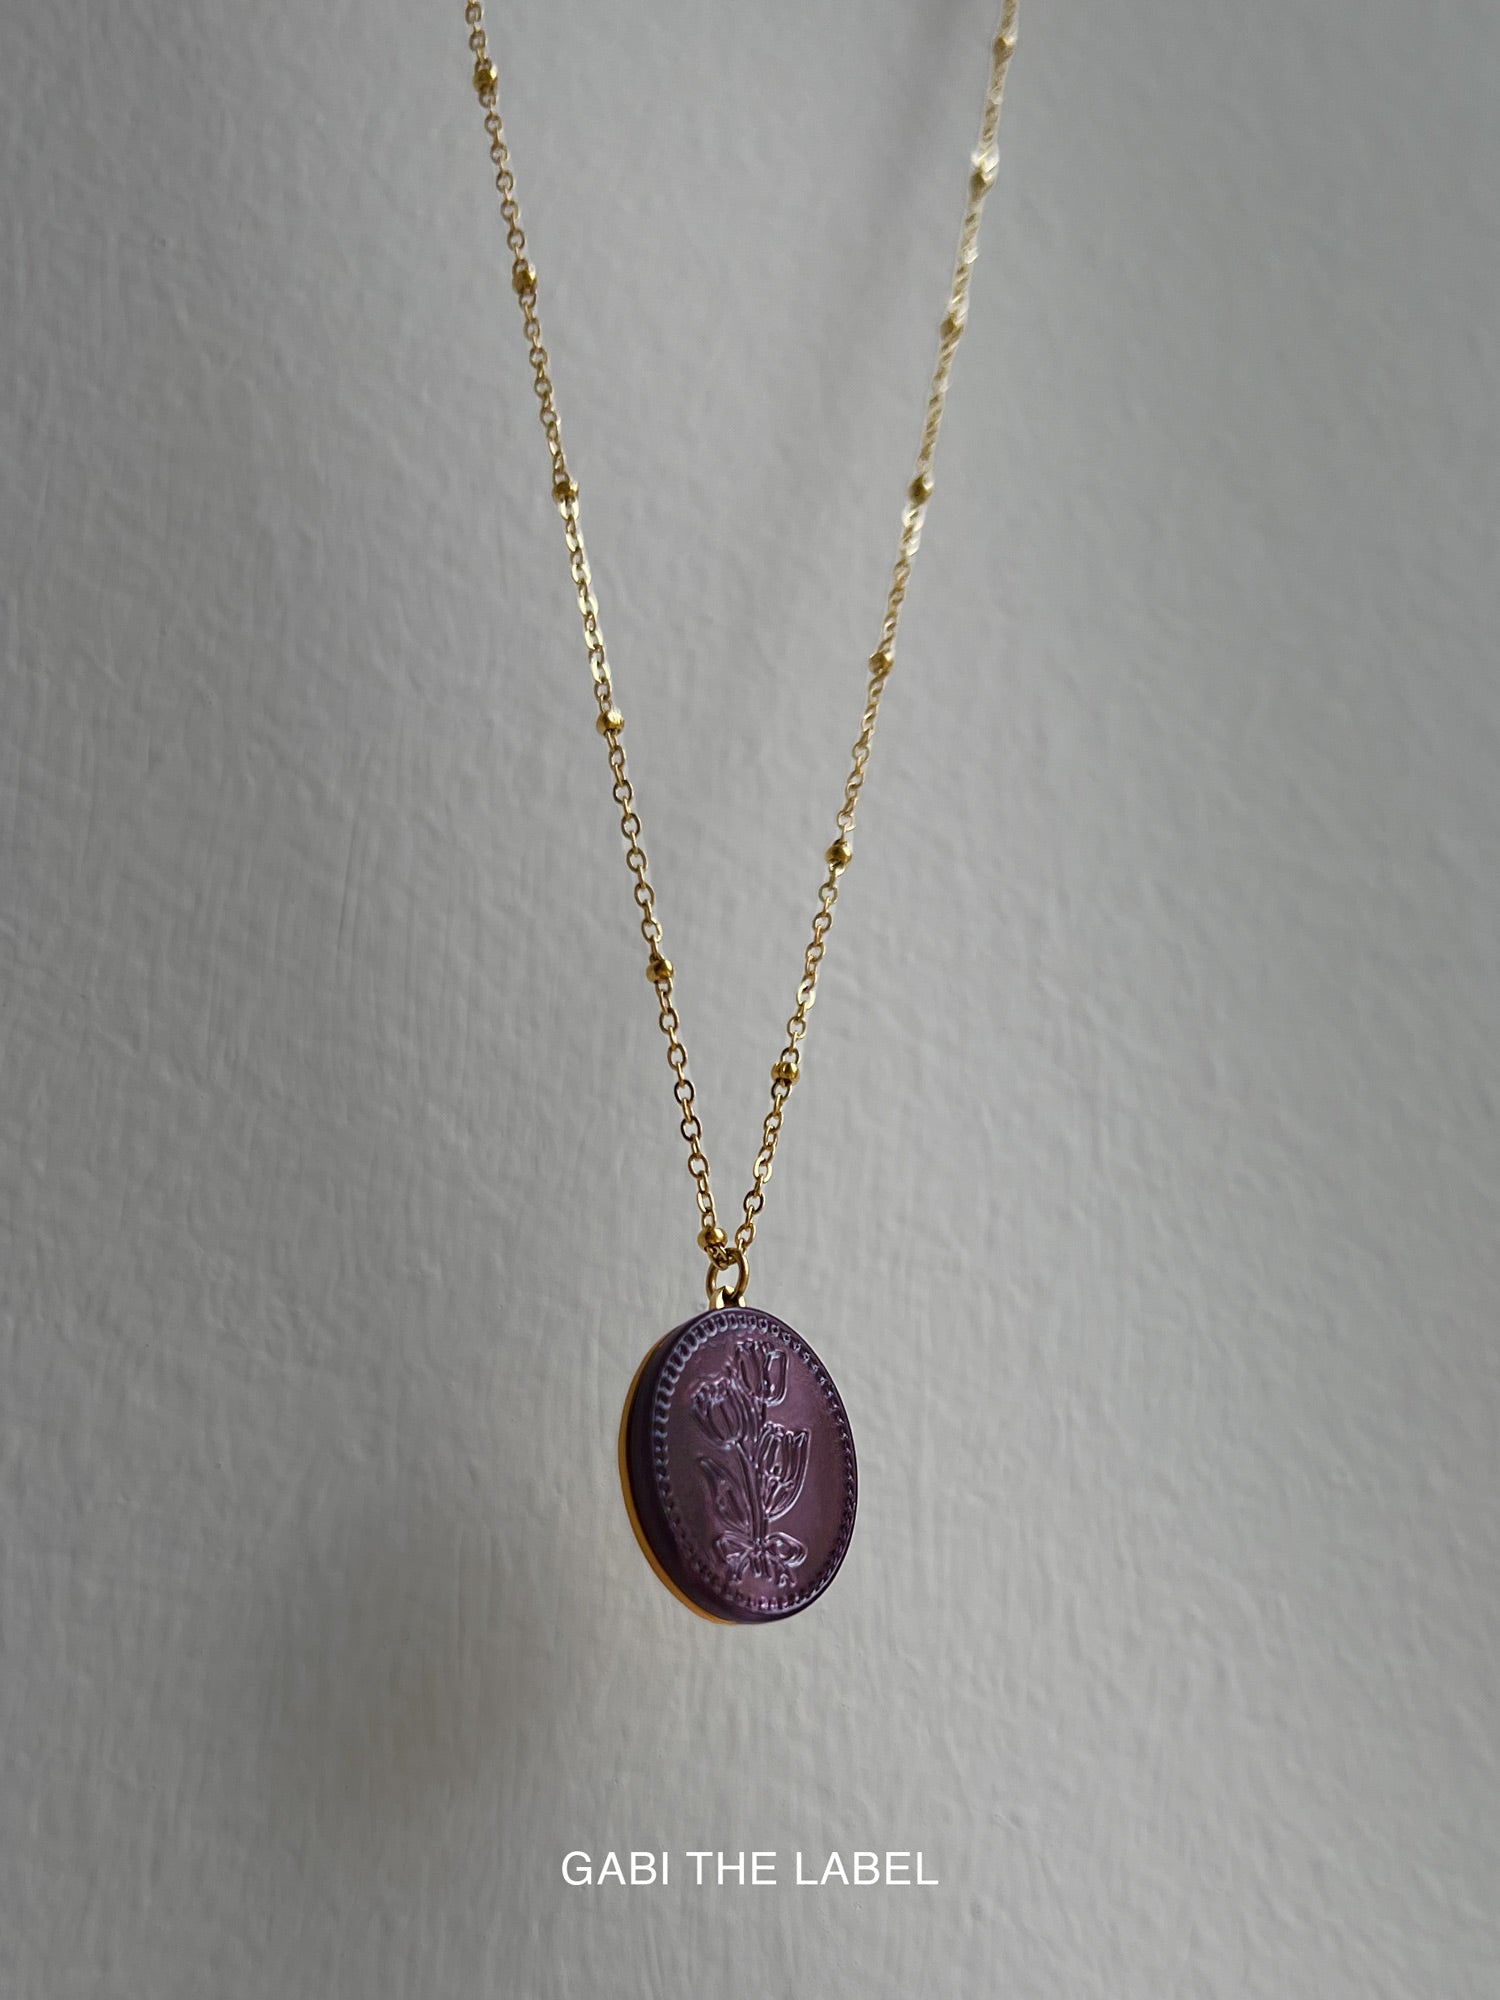 Grand Collier Pendentif Perle avec Fleurs Sculptées - Violet